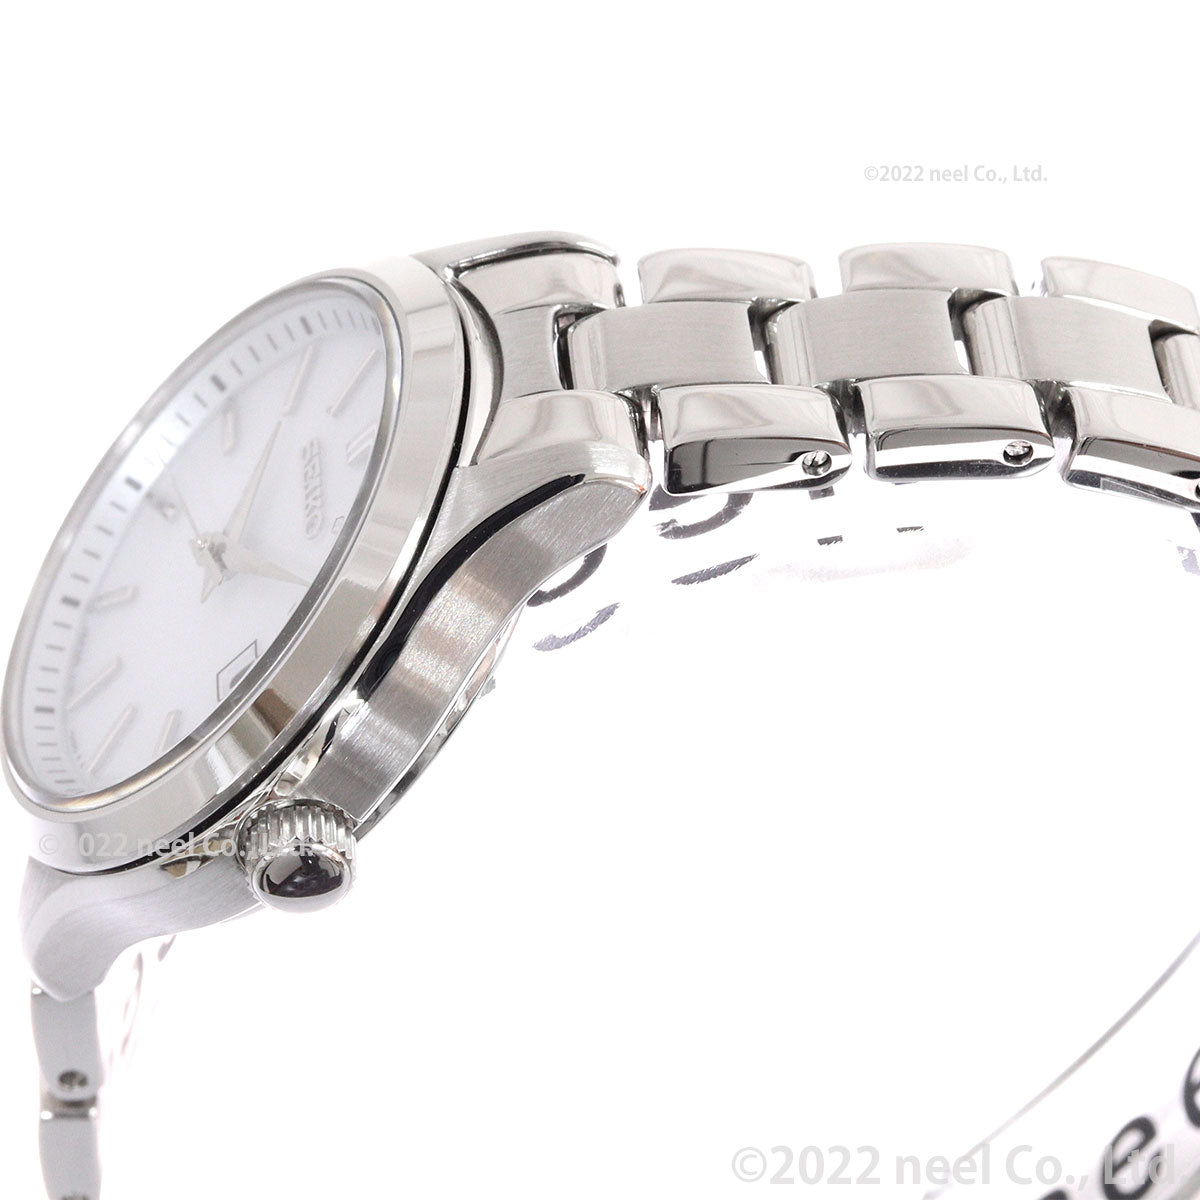 セイコー セレクション SEIKO SELECTION ソーラー 腕時計 メンズ レディース ペアモデル SBPX143 STPX093